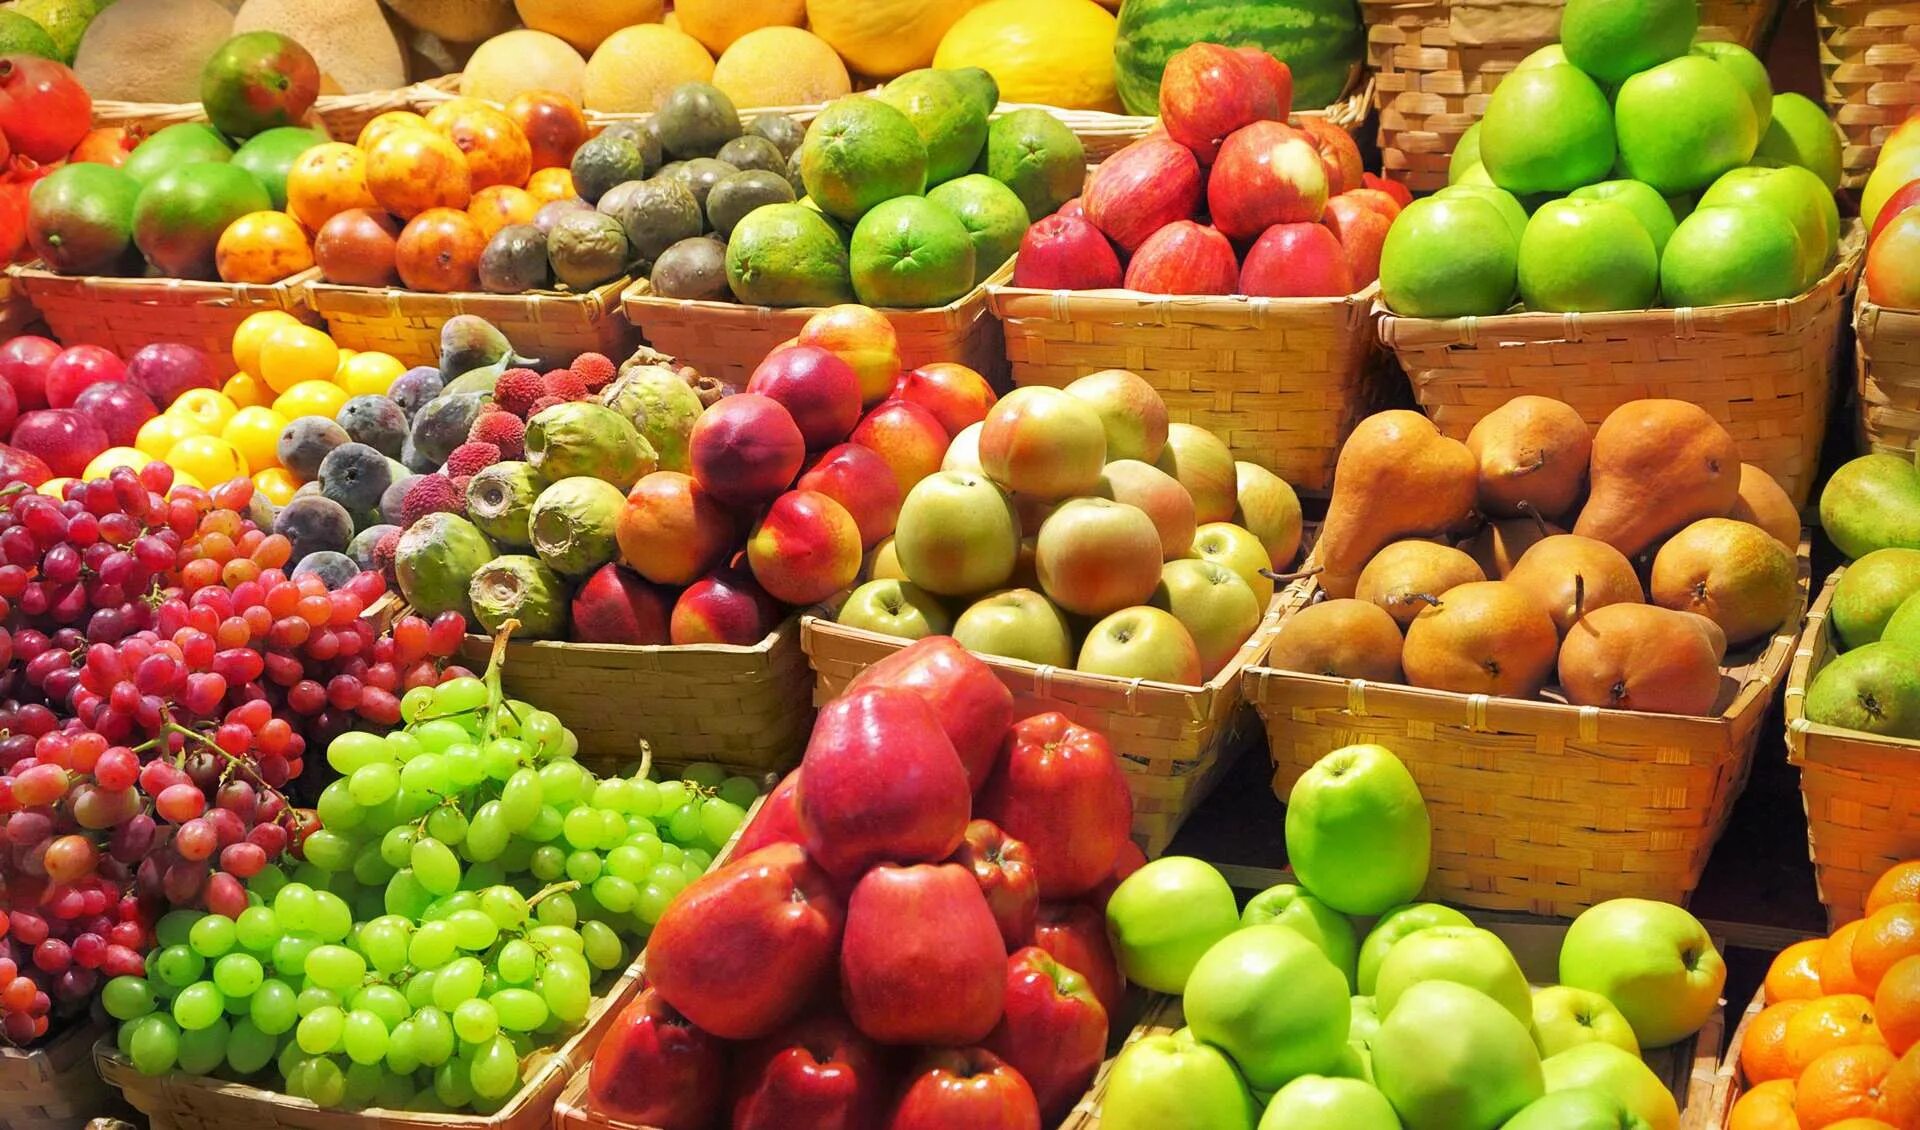 Фруктовая оптом. Овощи и фрукты. Прилавок с фруктами. Ассортимент фруктов и овощей. Прилавок с овощами и фруктами.